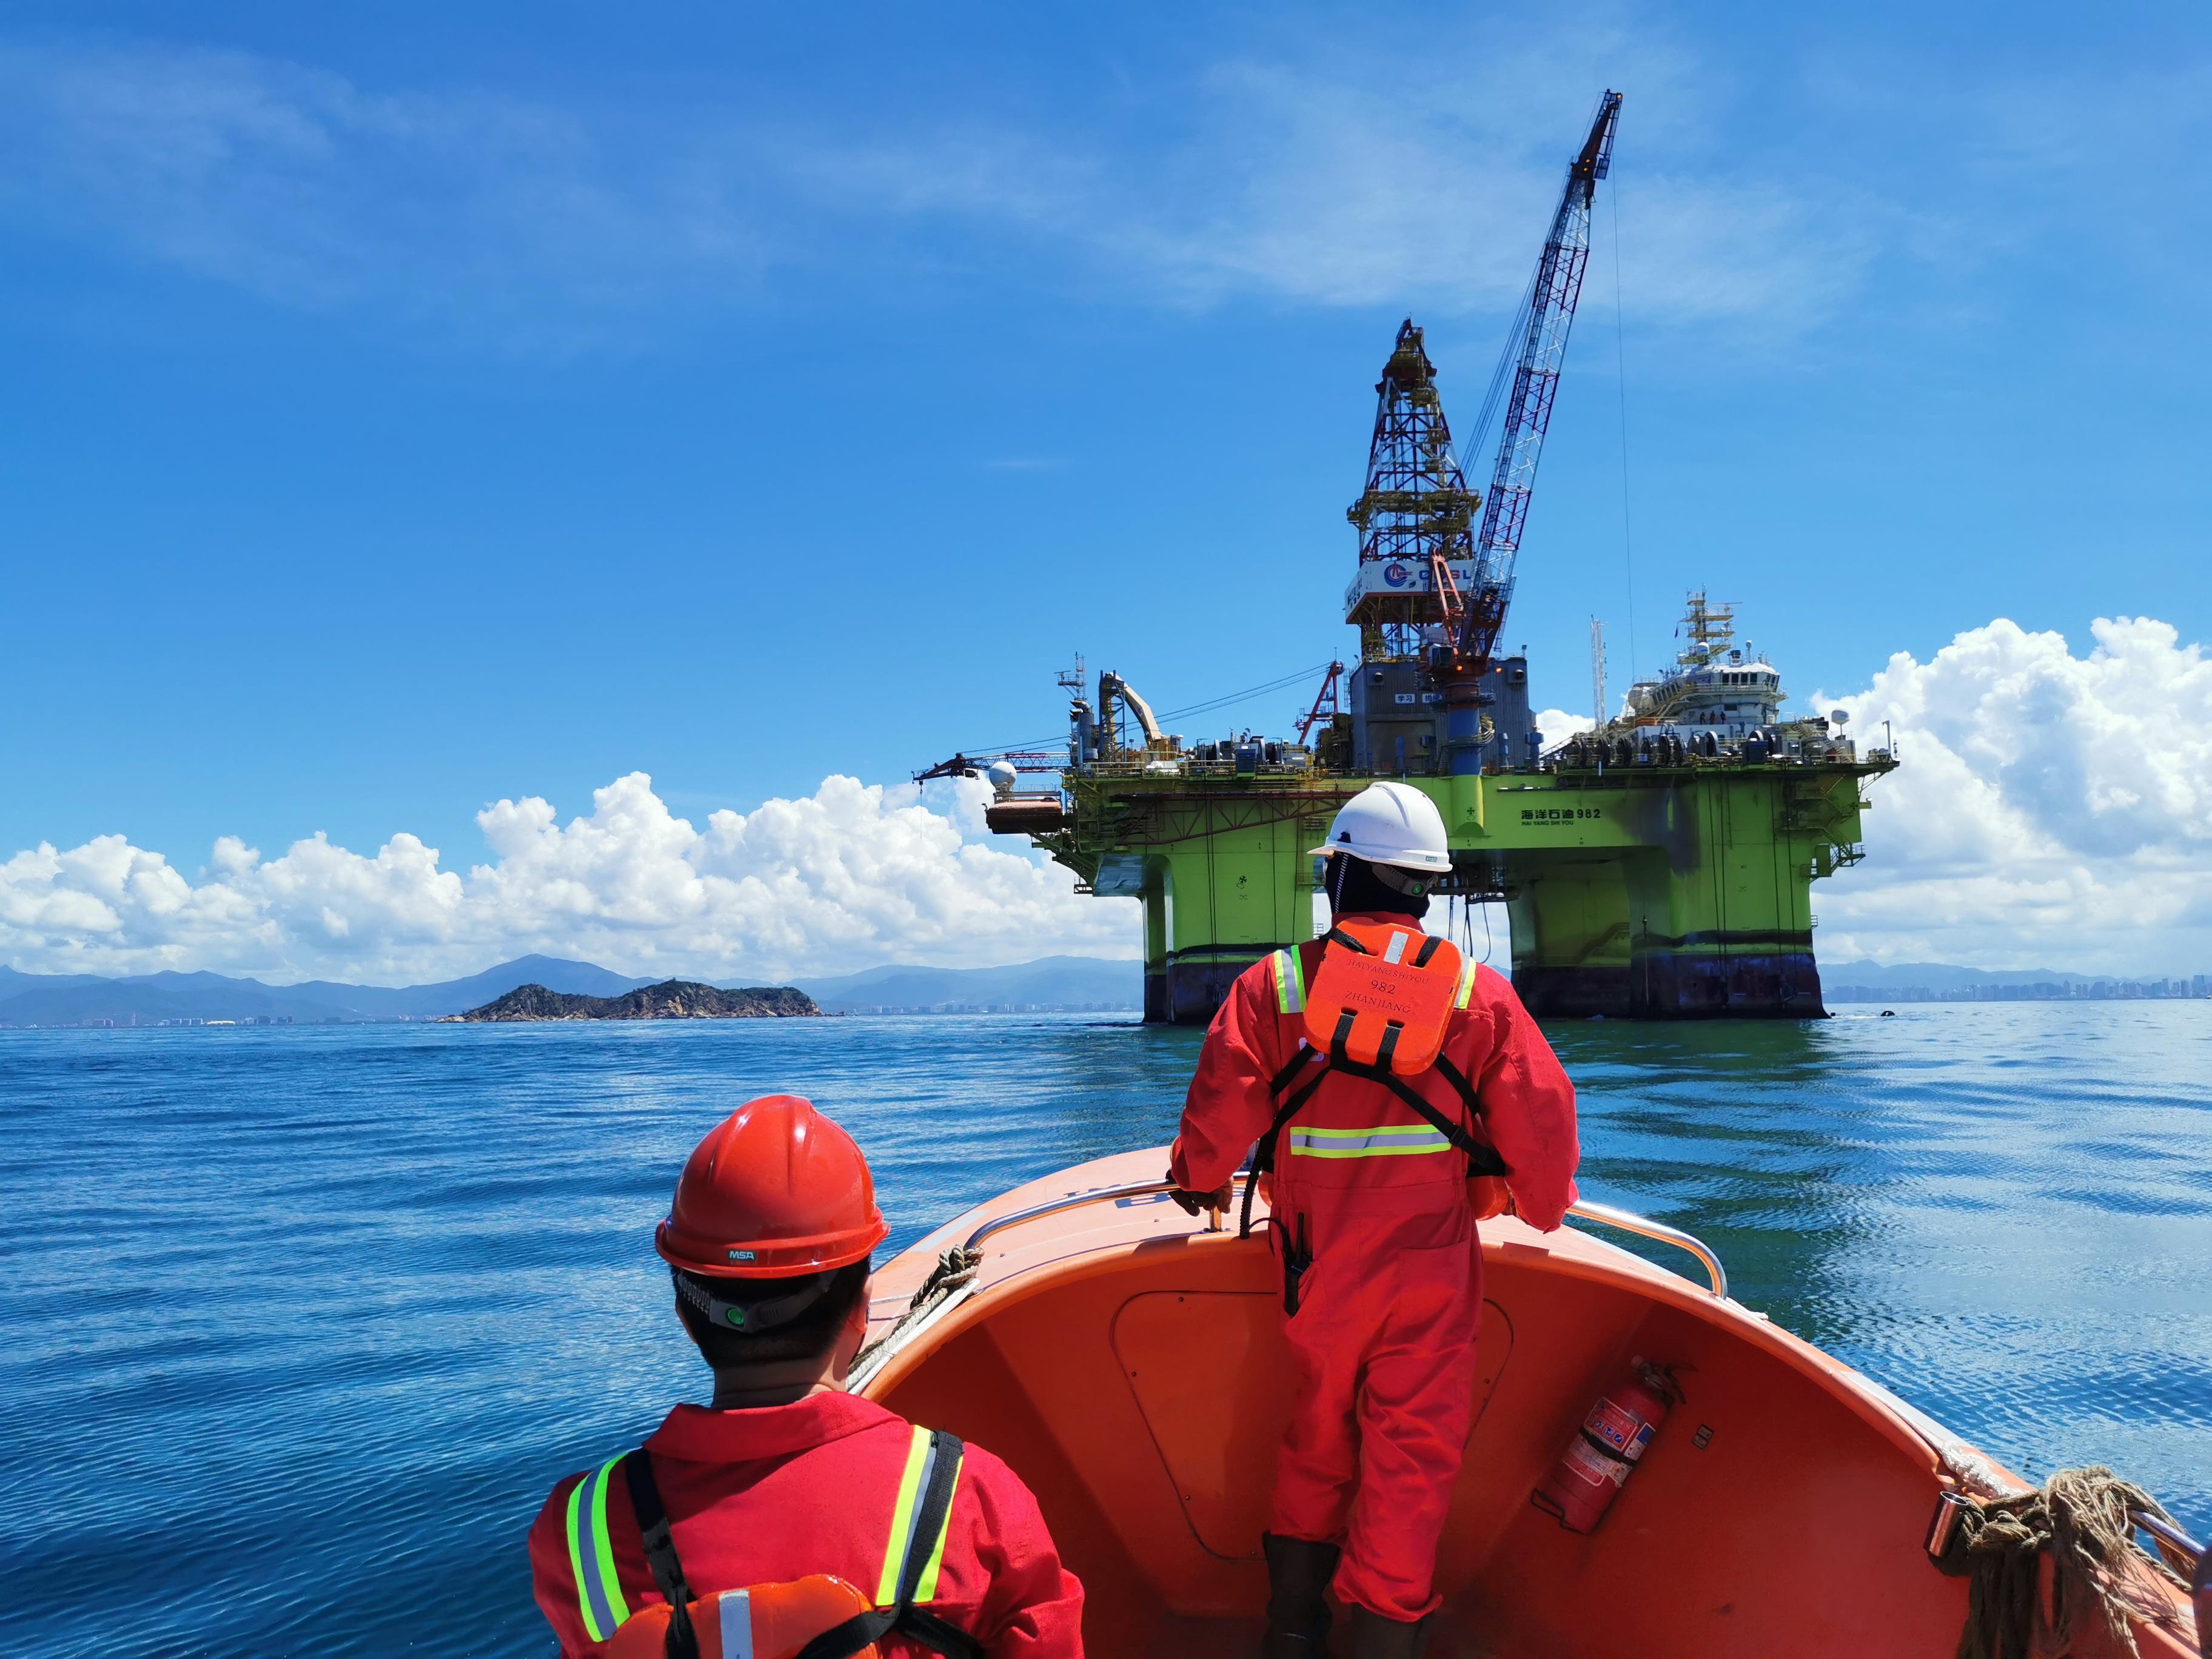 工程北斗闪耀南海 赋能海洋石油开发